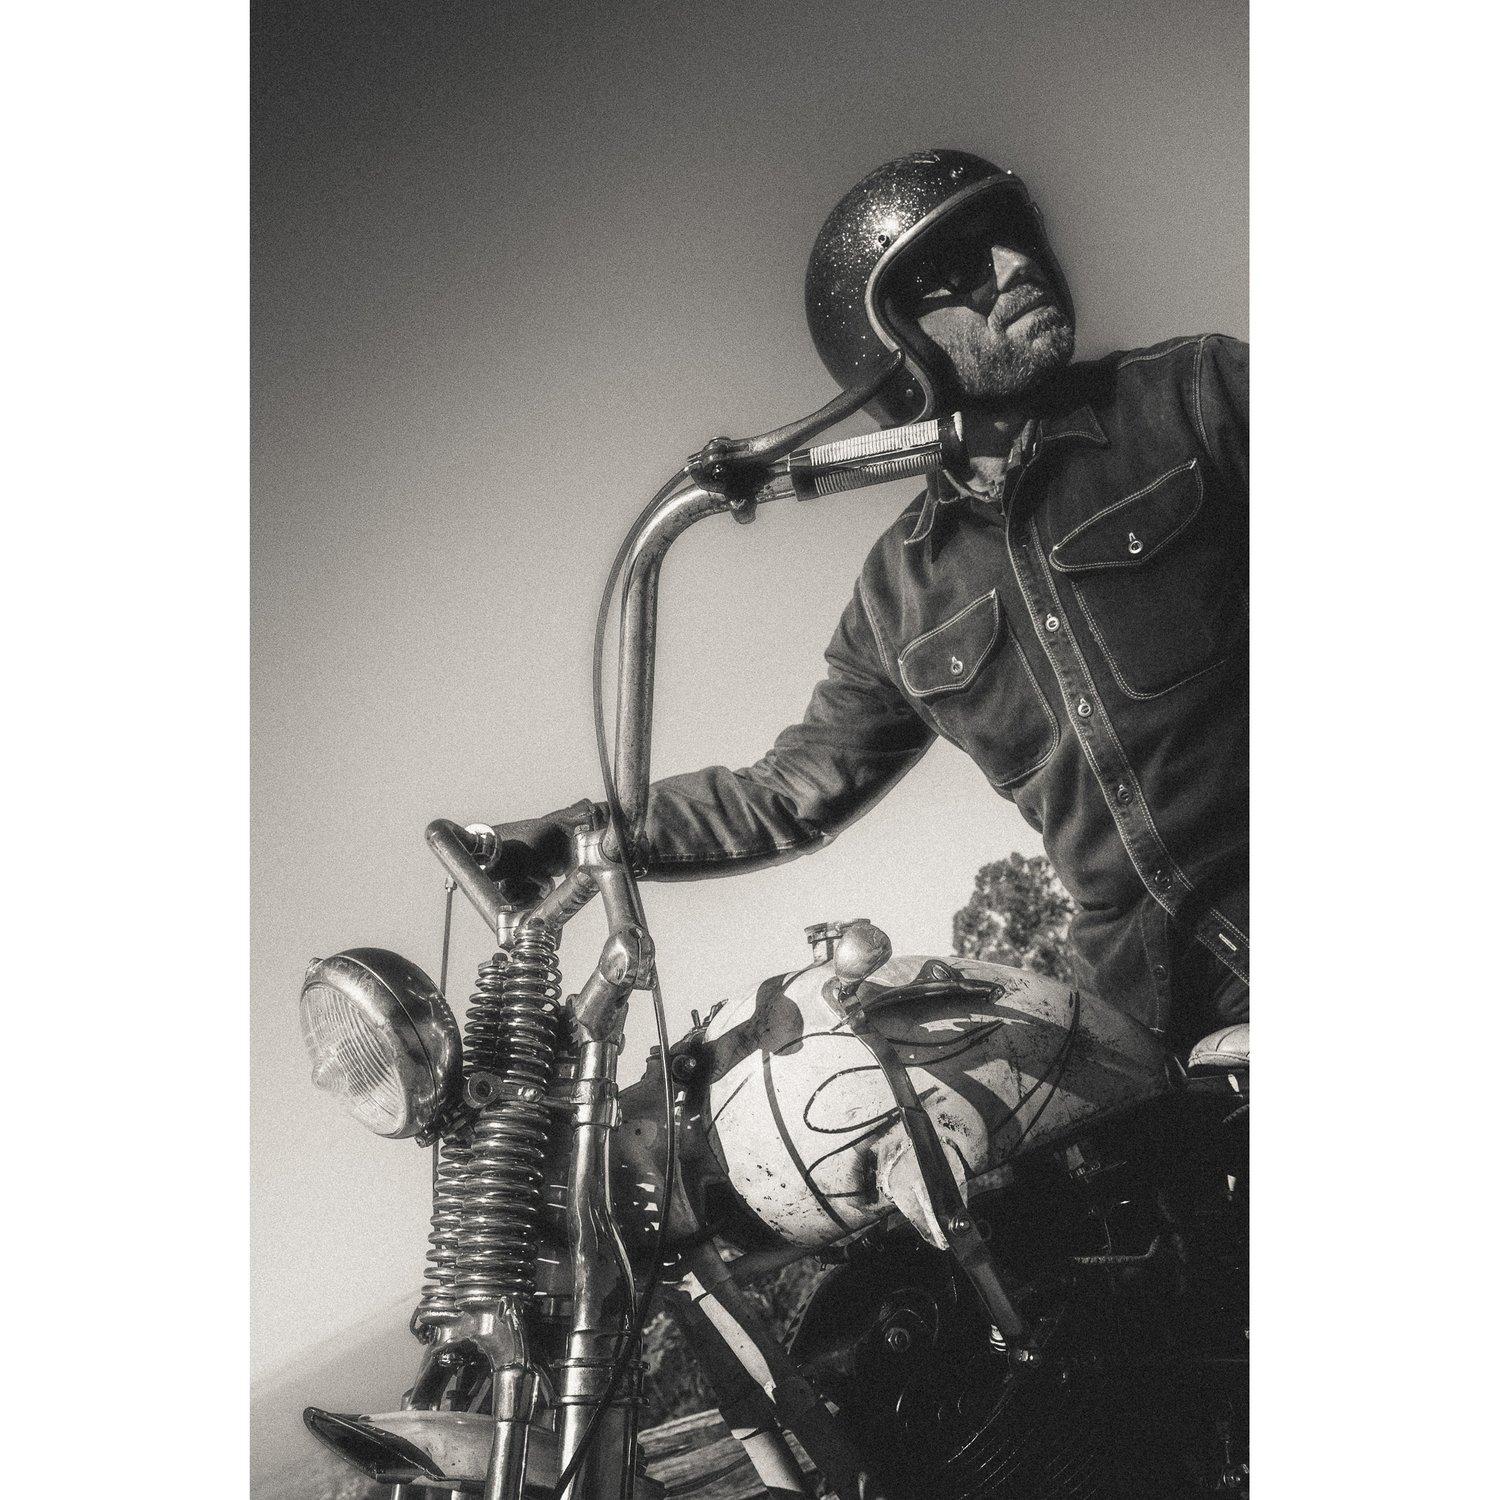 Dan Auerbach "Ride", San Francisco 2022, signierte Abzüge in limitierter Auflage vom offiziellen Fotografen der Black Keys, Larry Niehues. 

Die Beziehung zwischen den Black Keys und Larry Niehues begann durch die gemeinsame Liebe zu Motorrädern,